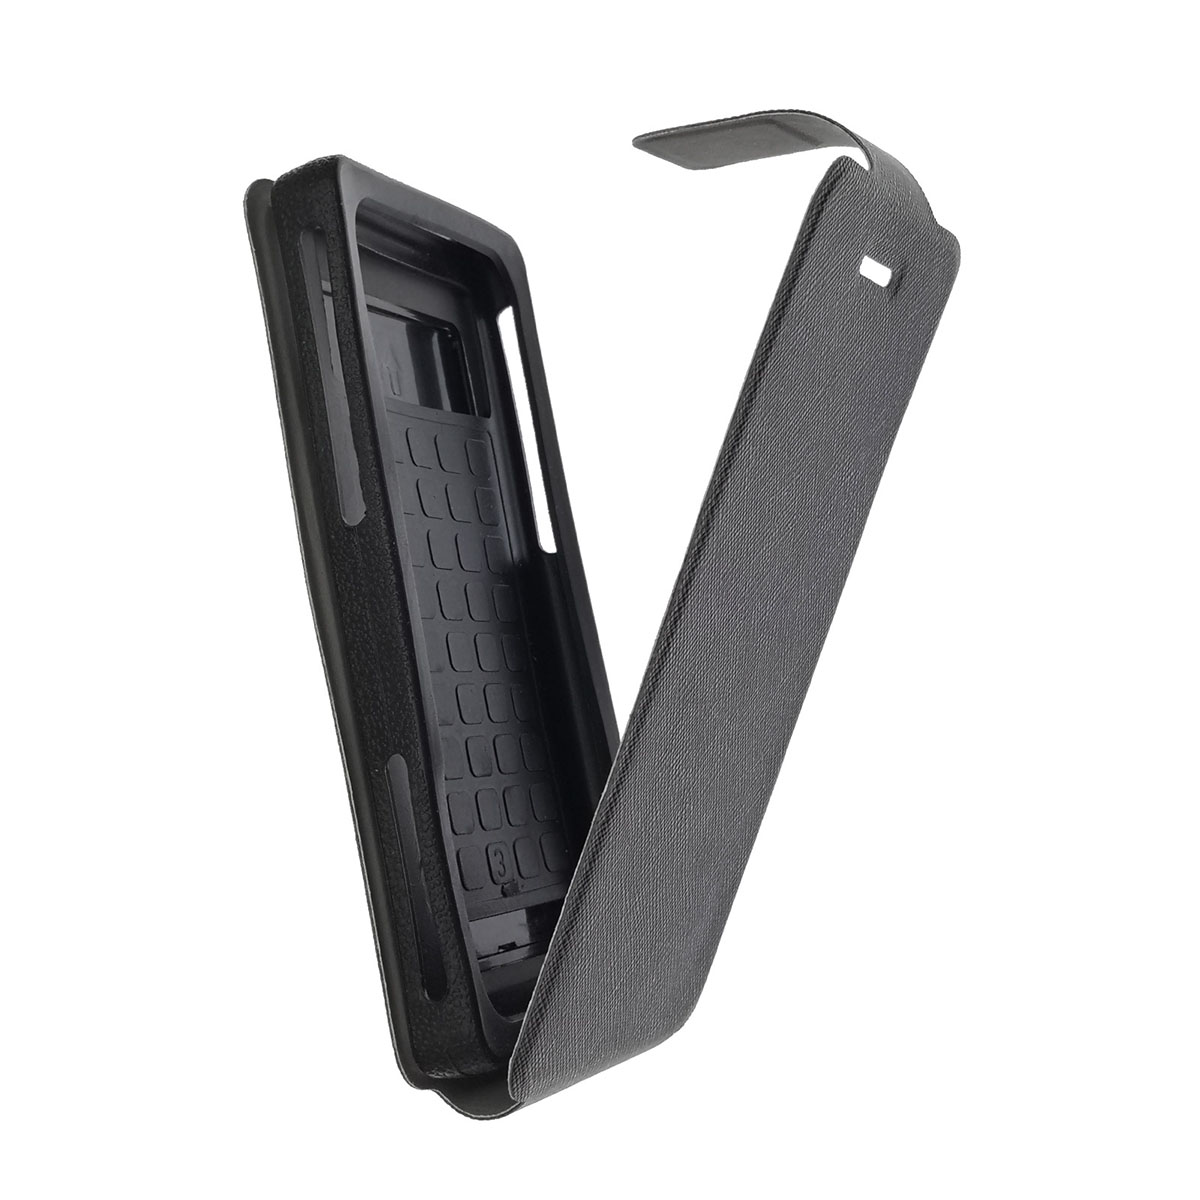 Чехол книжка универсальная для смартфонов размером 4.6 - 4.9, силикон, магнит, цвет черный.